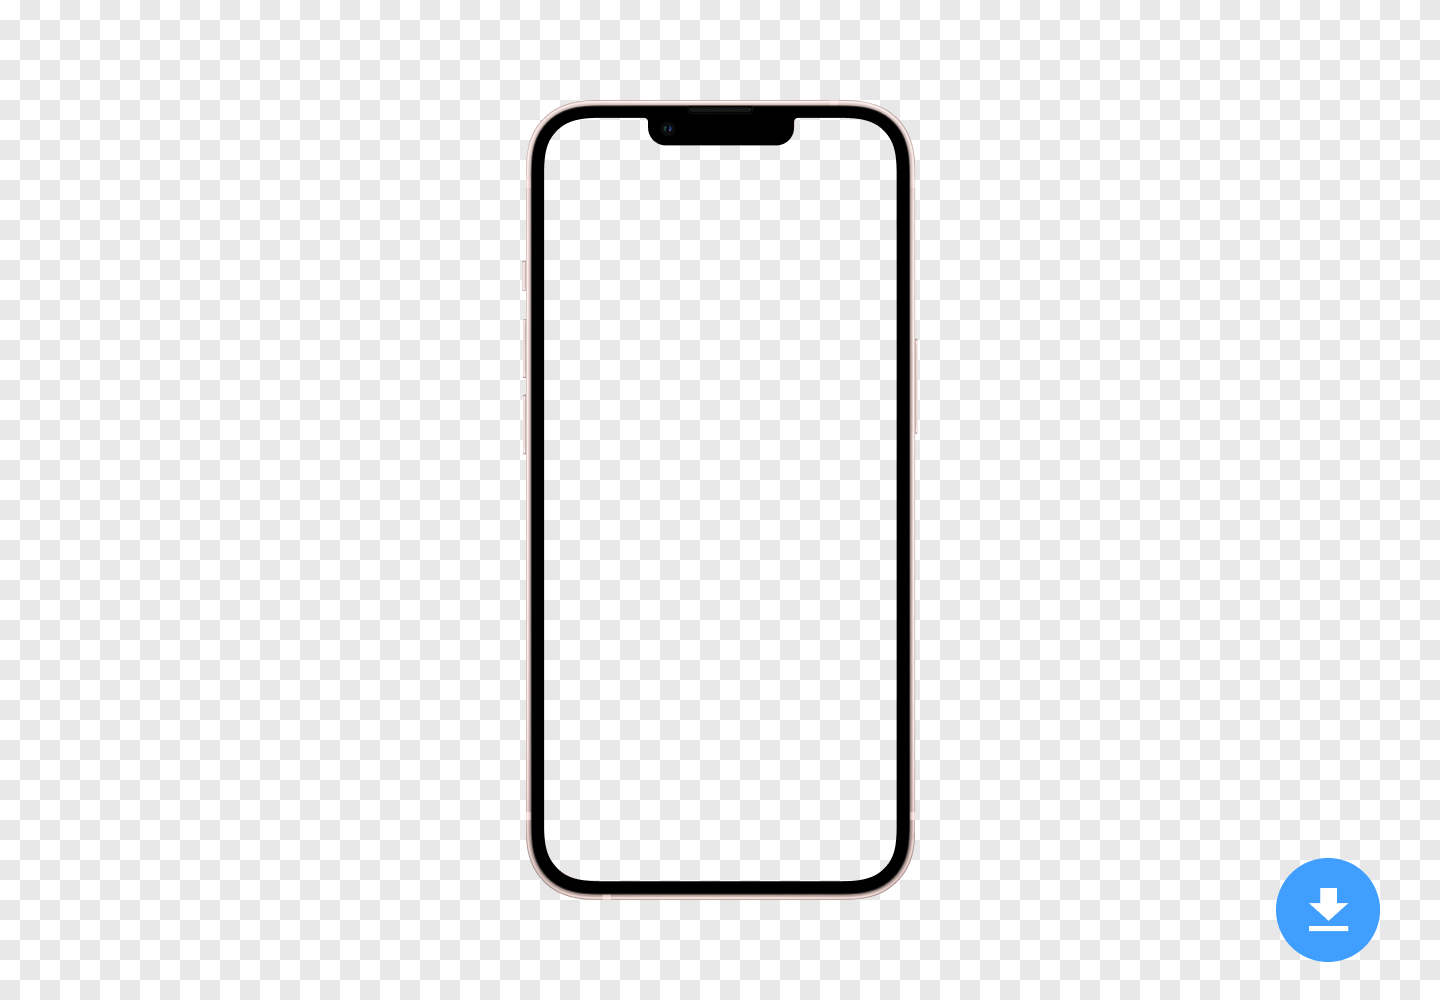 Maqueta HD gratuita de Apple iPhone 13 Mini (2021) en formato de imagen PNG y PSD con fondo transparente